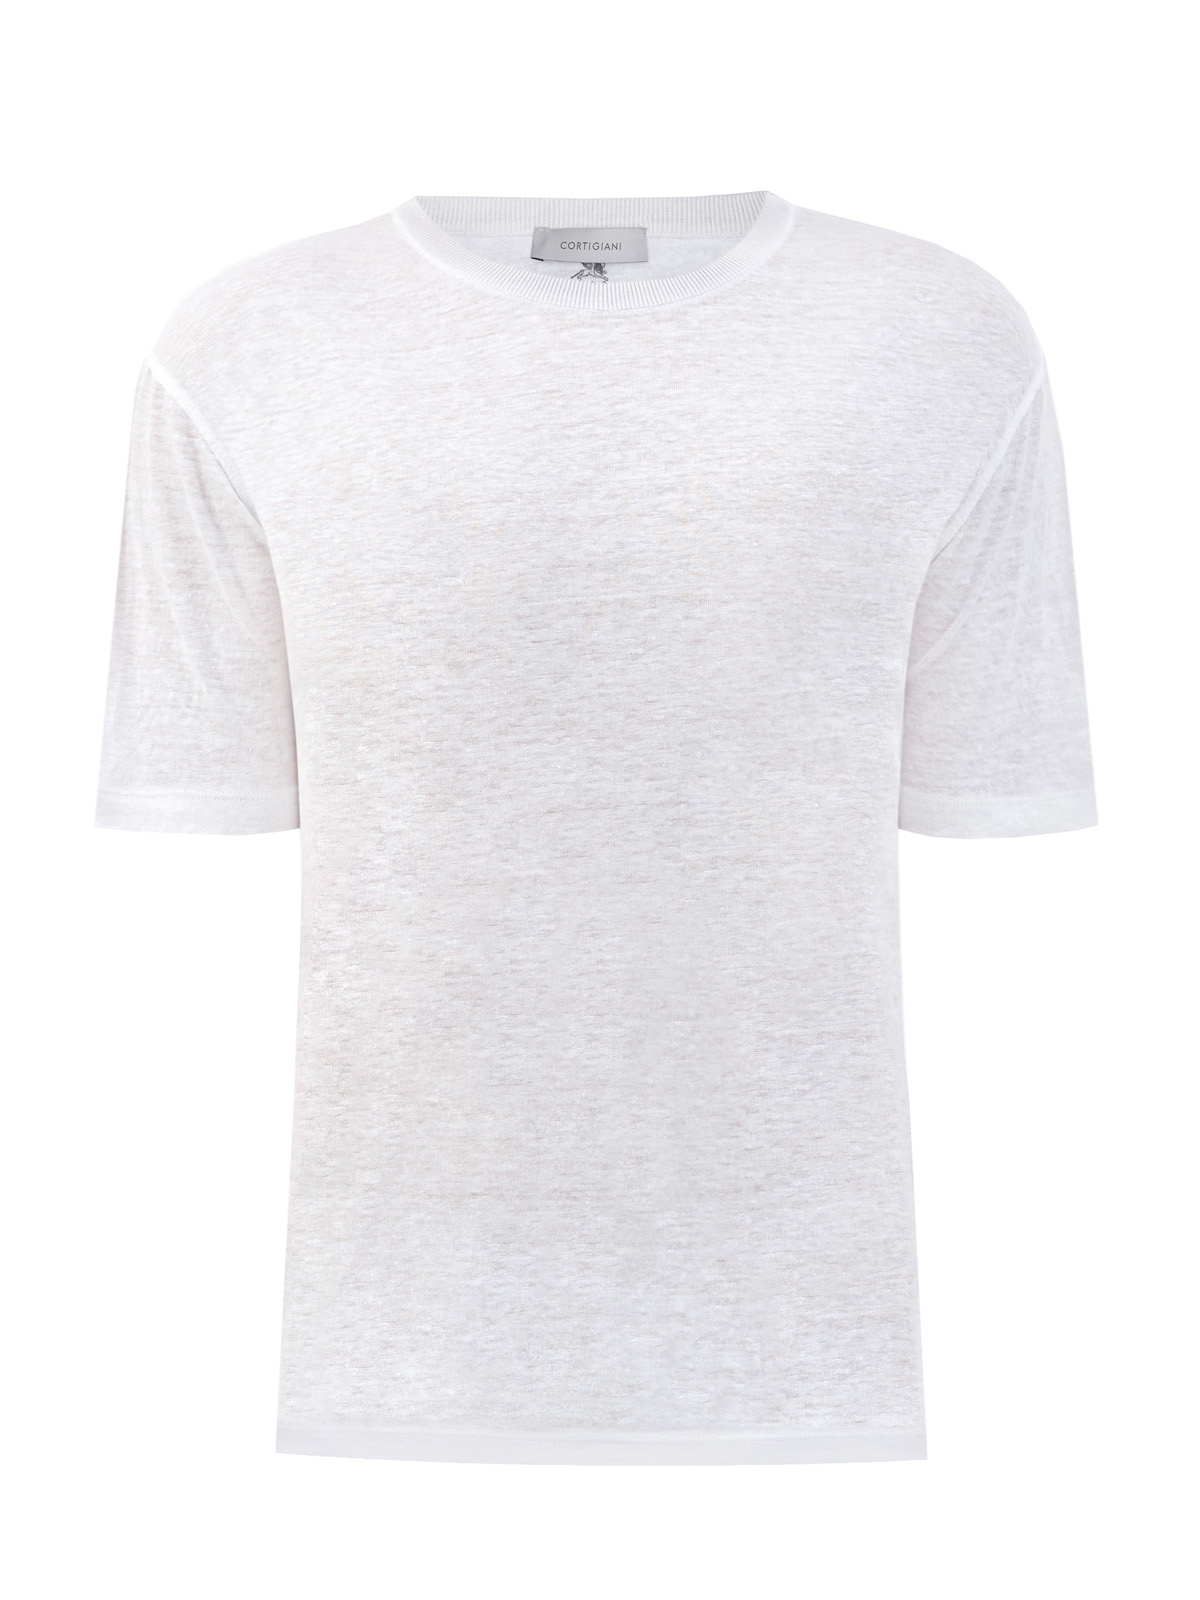 Легкая футболка из льняной ткани в меланжево-белом цвете CORTIGIANI, размер 50;52;56;58 - фото 1